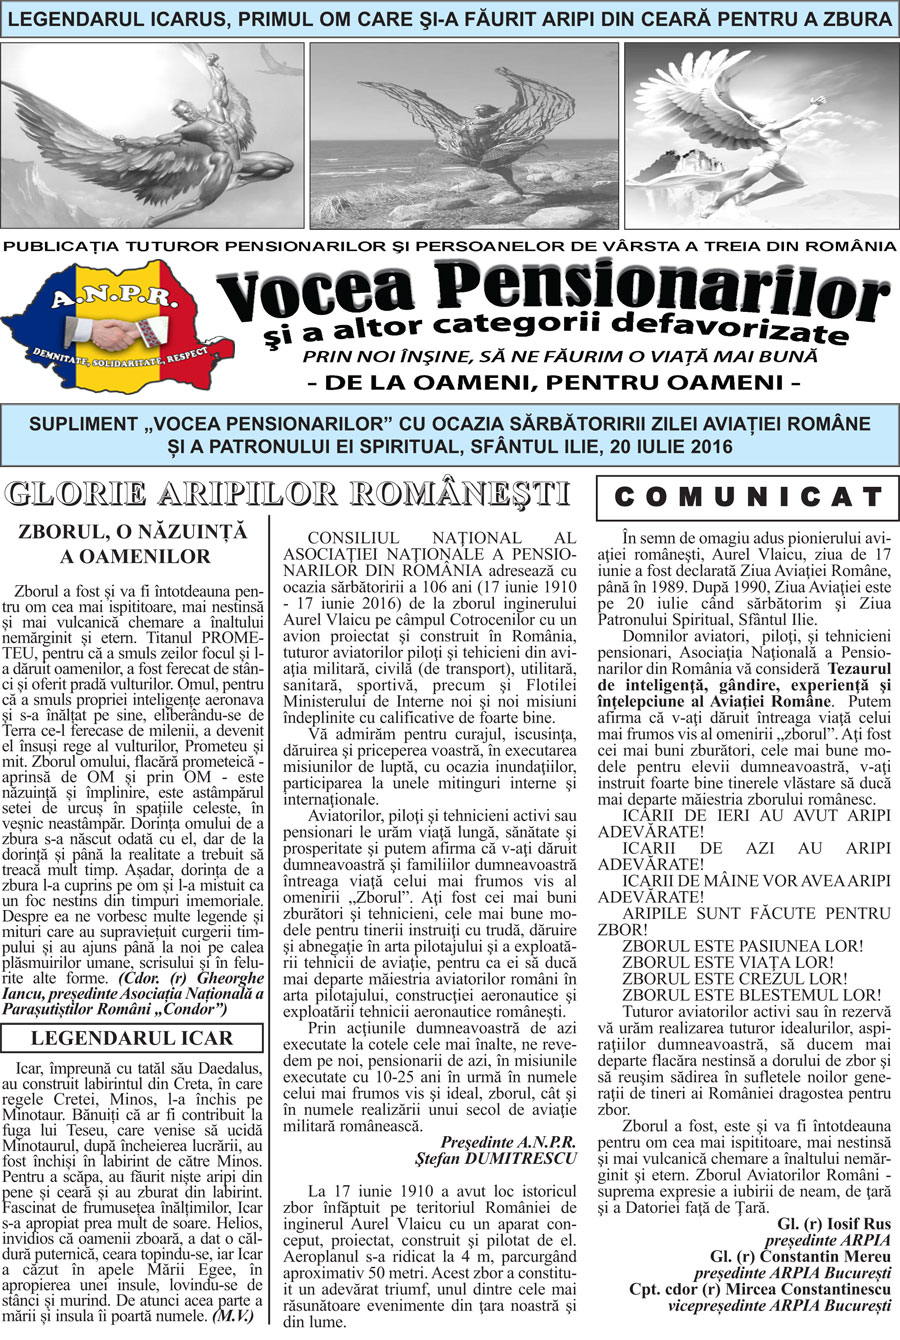 Supliment Ziarul ONG ANPR Vocea Pensionarilor luna iulie 2016